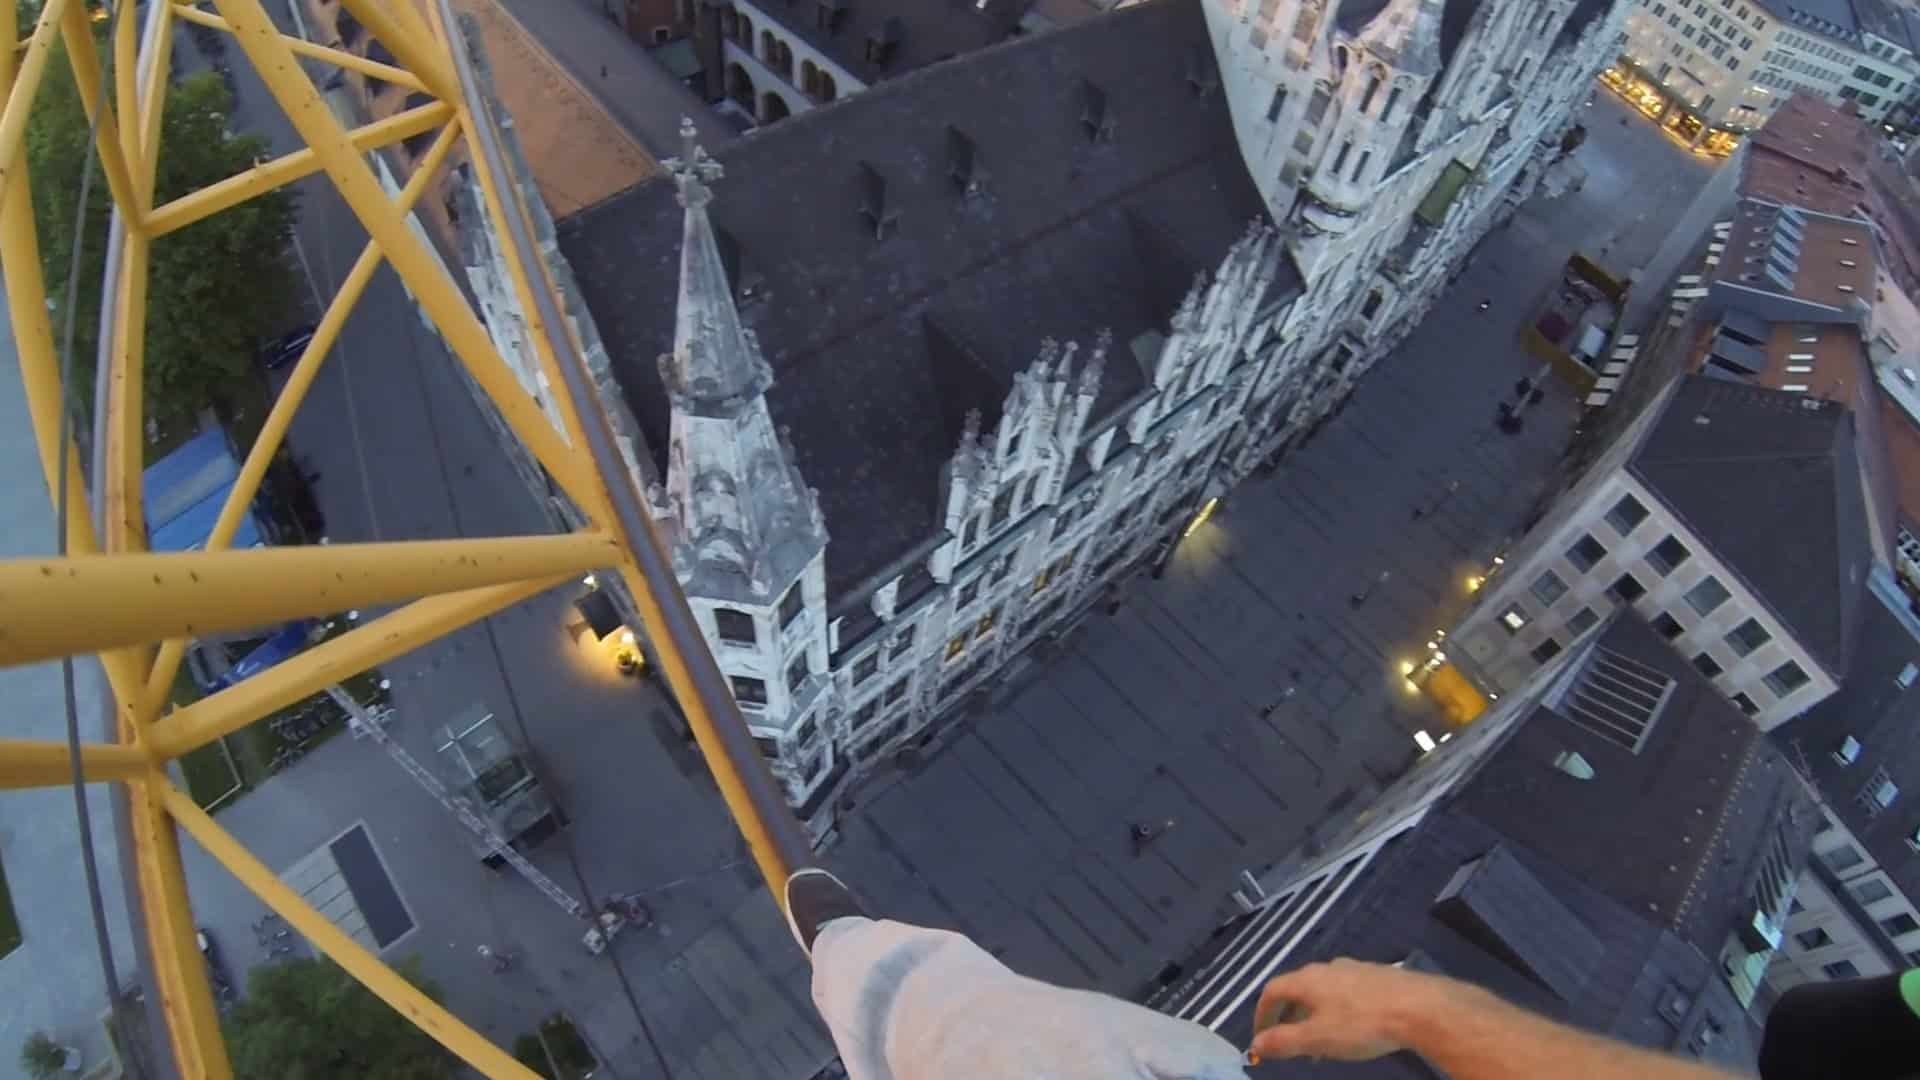 Climbing a crane for sunrise in Munich